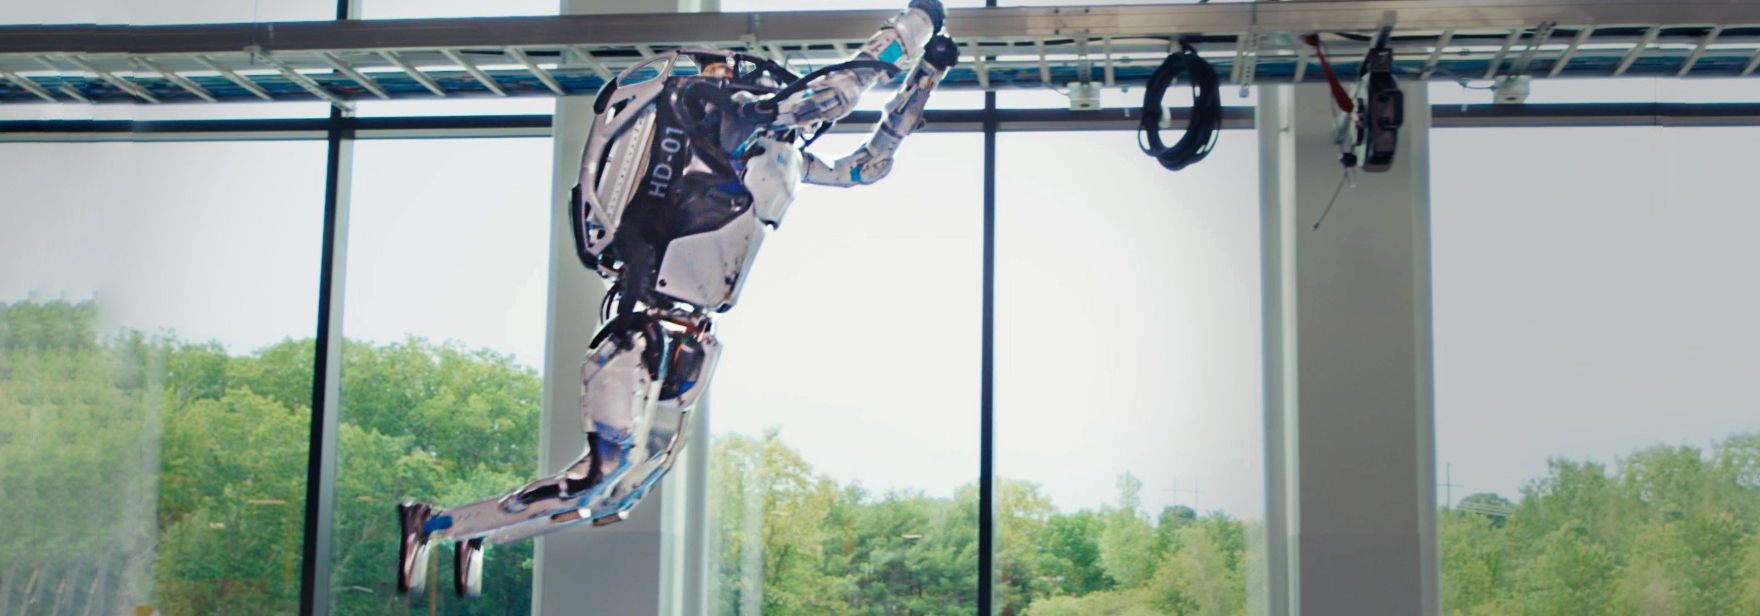 Boston Dynamics научила роботов паркуру. Они одновременно сделали сальто назад — посмотрите сами